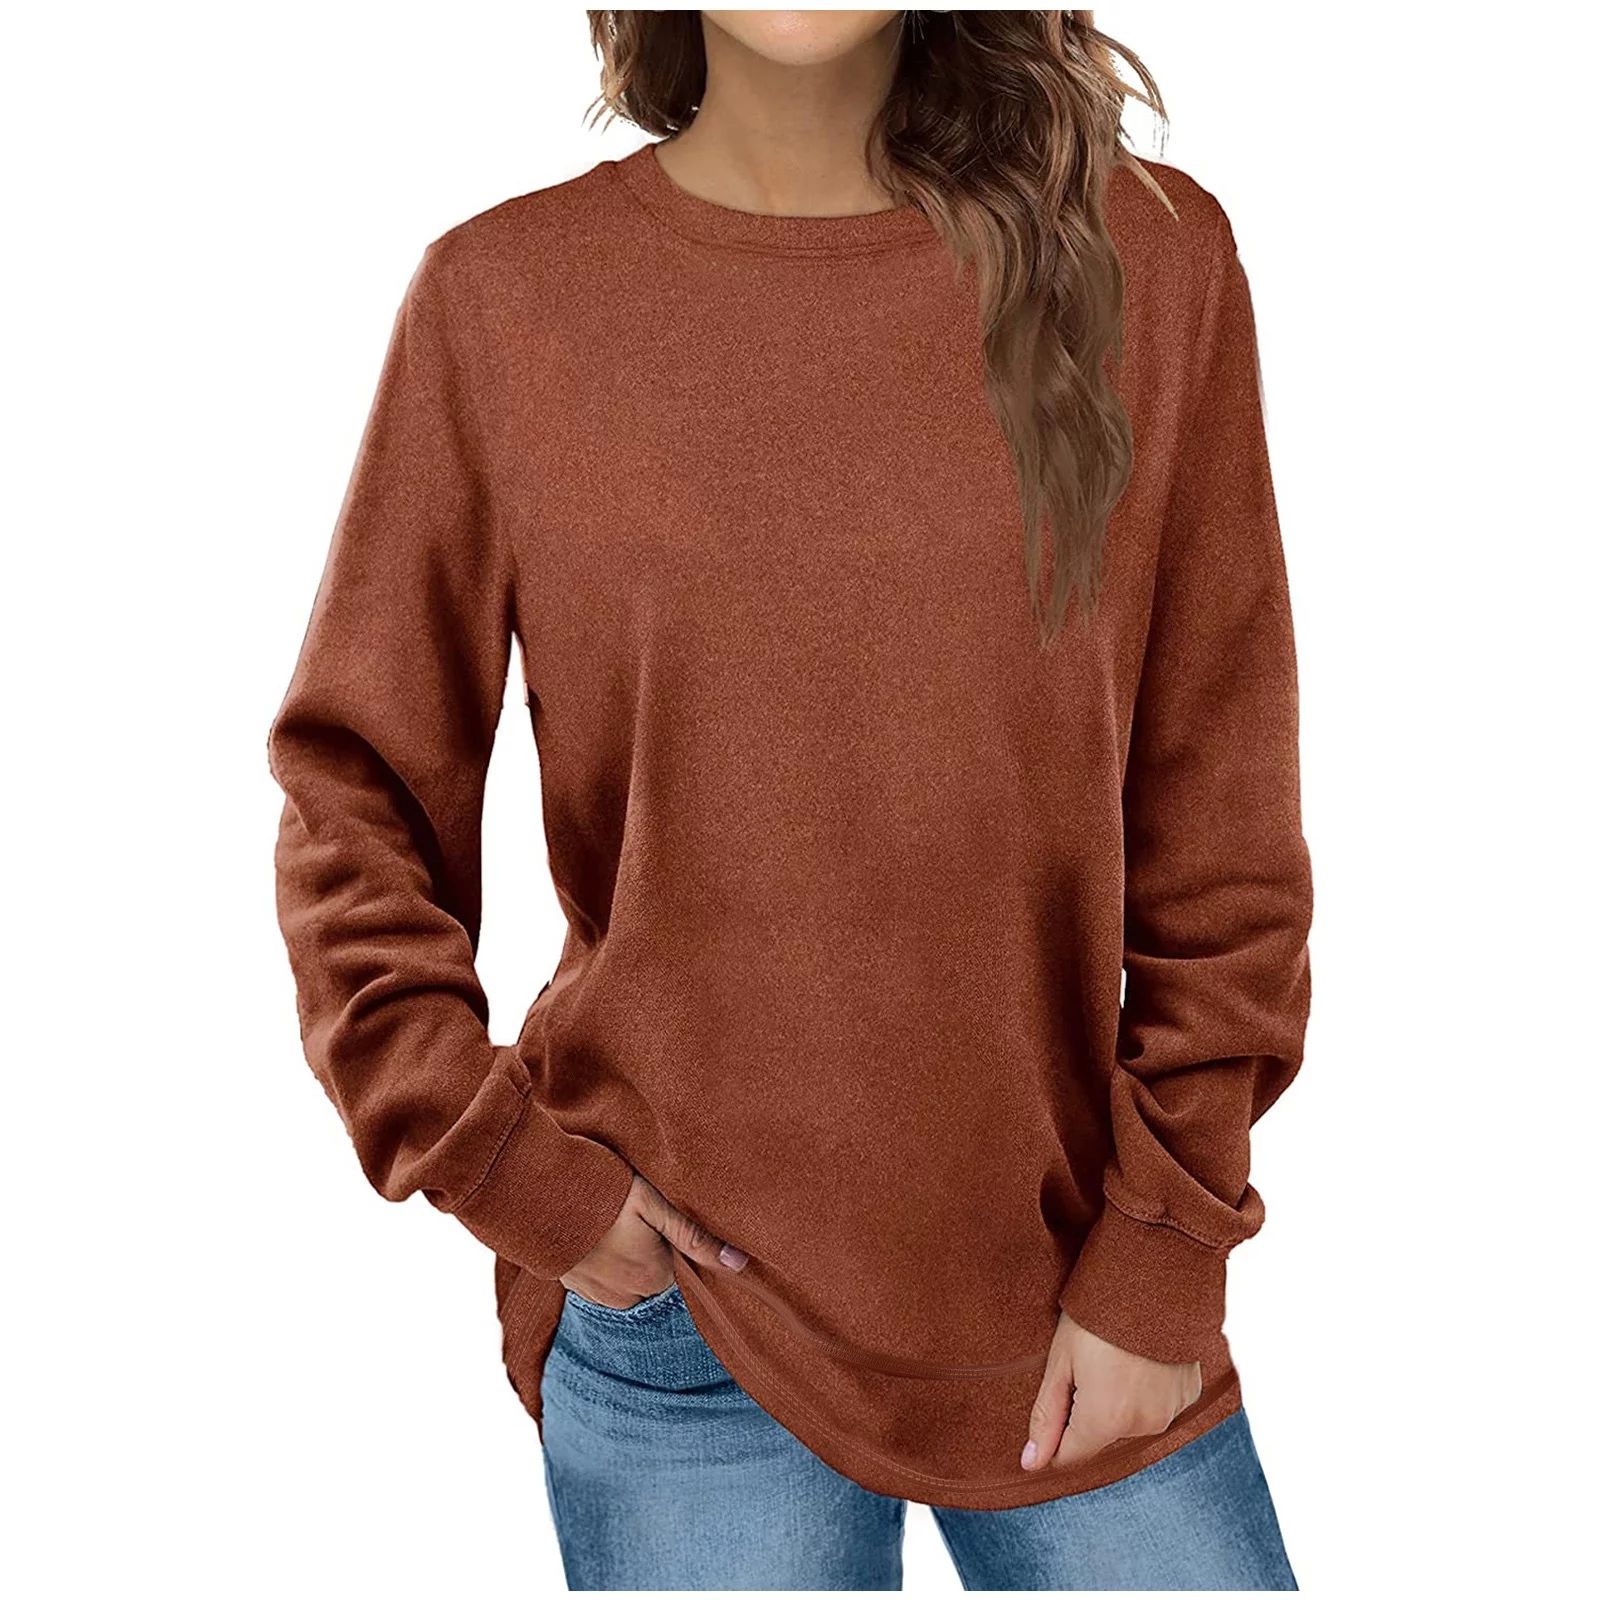 Fantaslook Sweatshirts for Women Crewneck Casual Long Sleeve Shirts Tunic Tops - Walmart.com | Walmart (US)